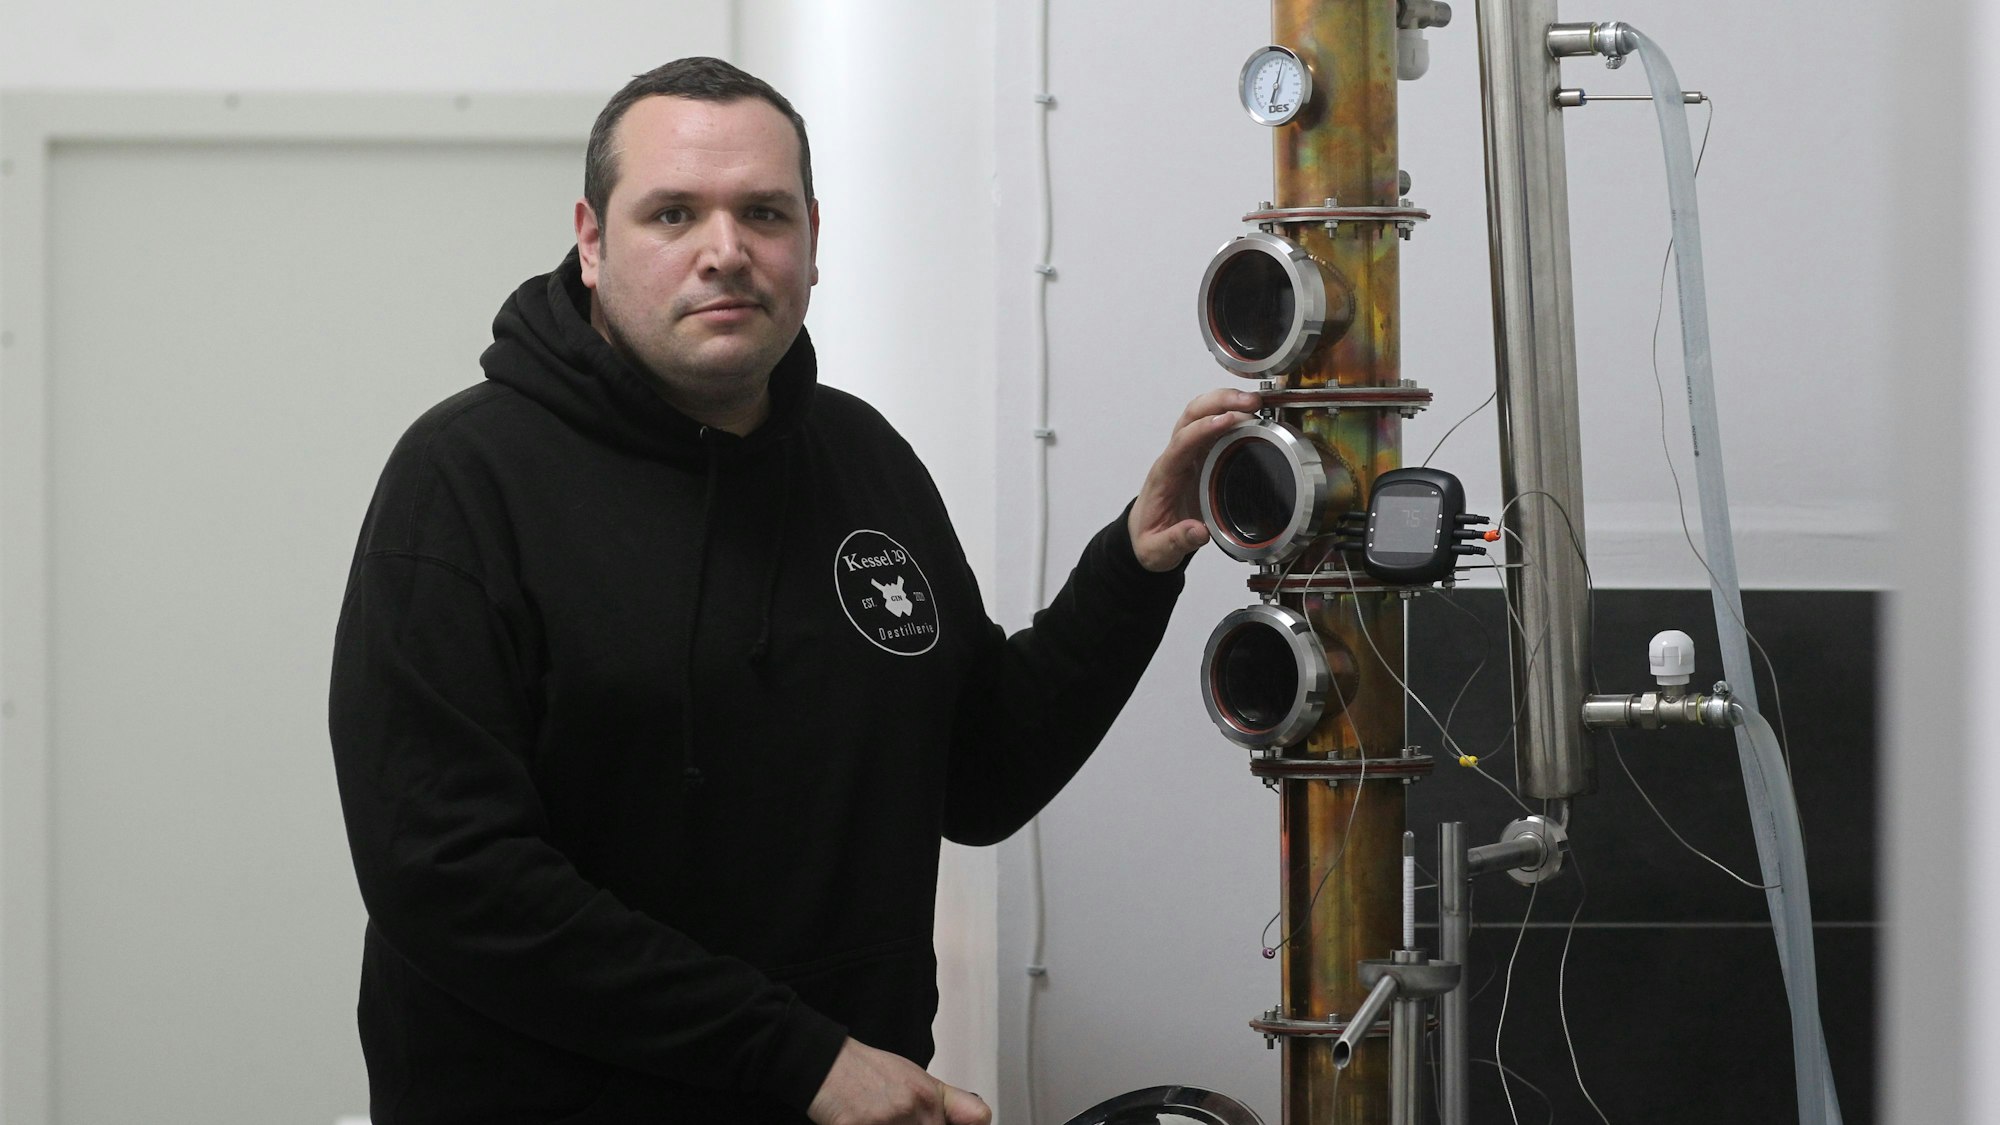 Kevin Braun aus Troisdorf schaut vor einem Gerät, das zur Gin-Produktion genutzt wird, in die Kamera. Er trägt einen schwarzen Hoodie.